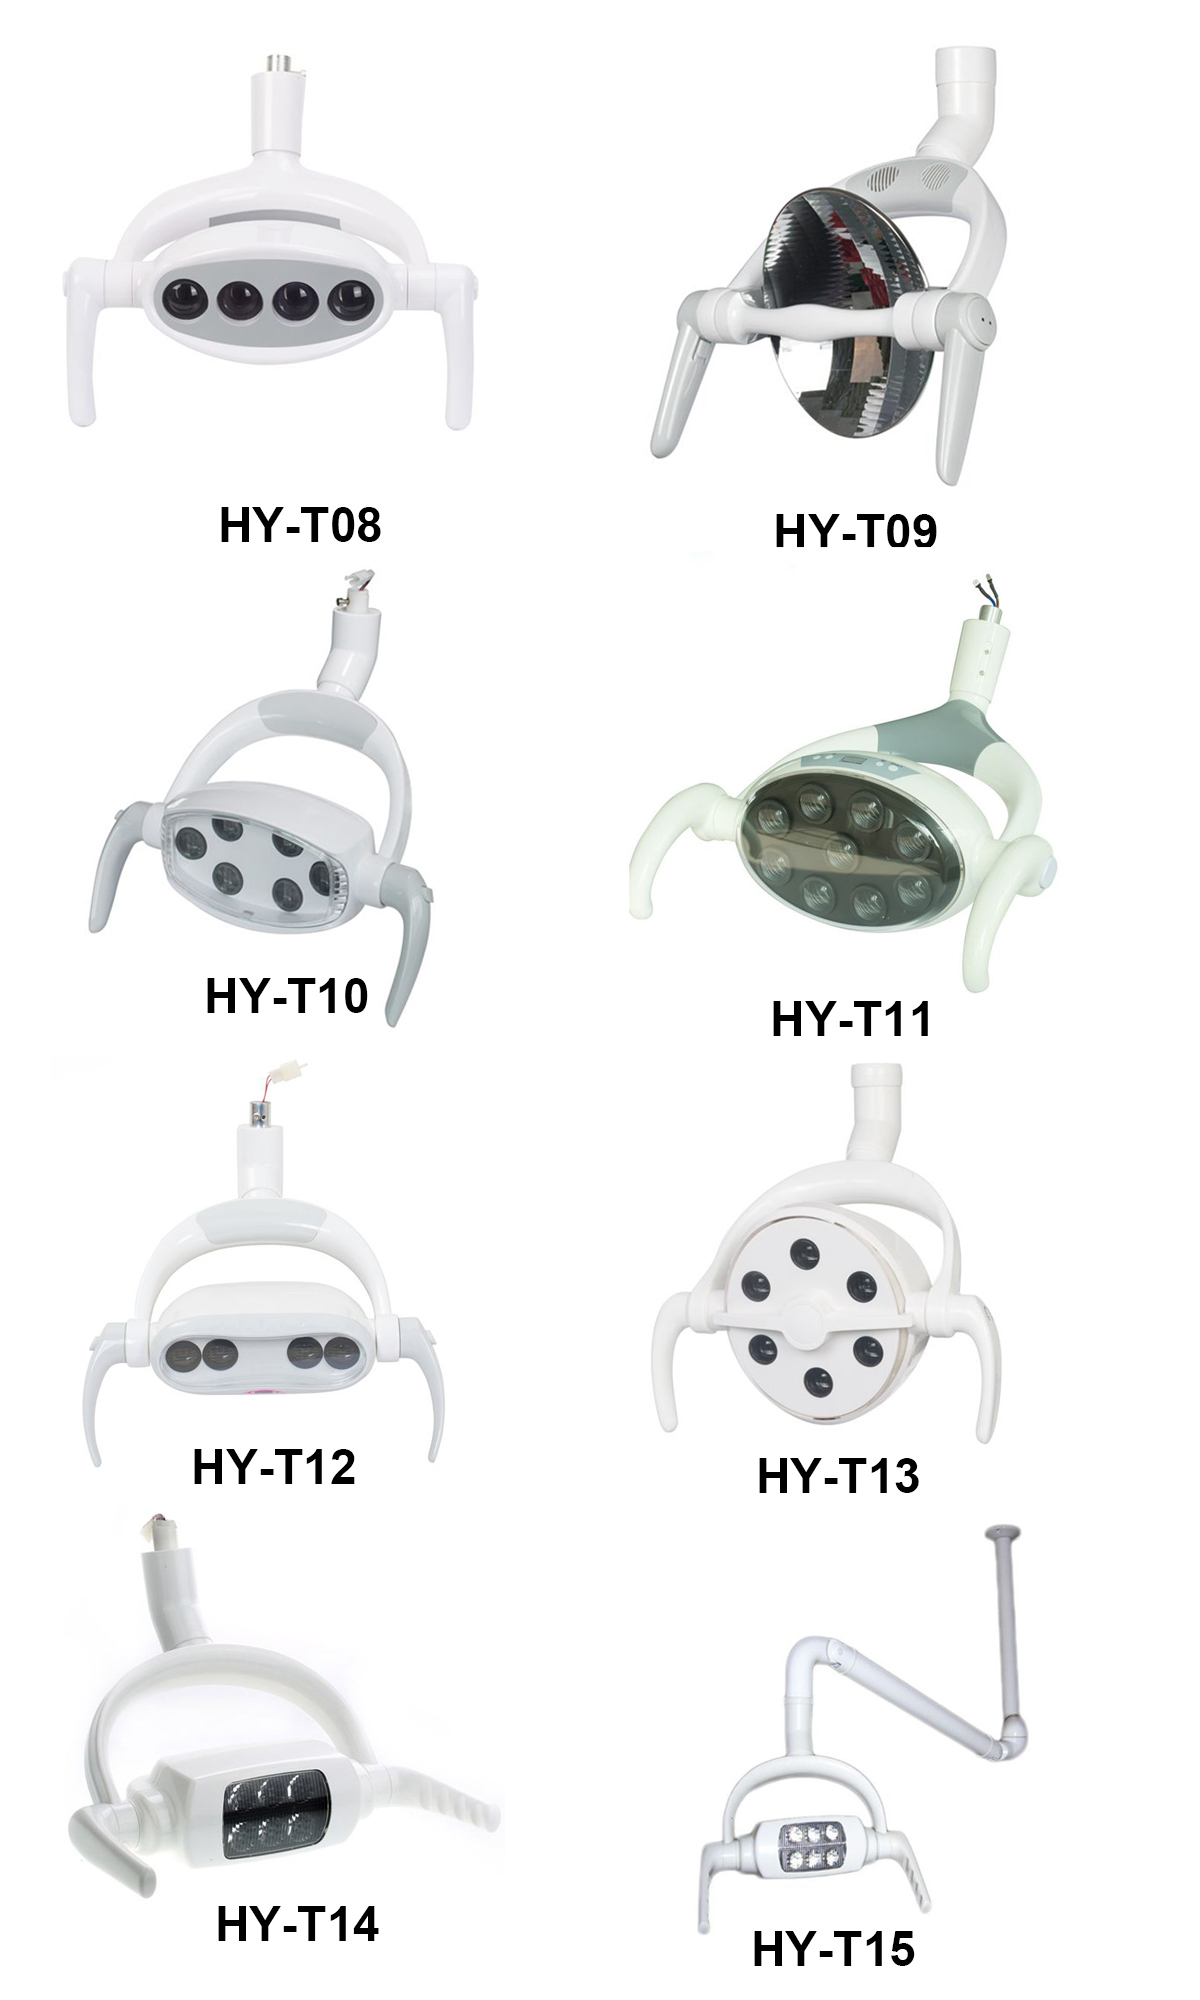 HY-T08 Dental LED Lamp